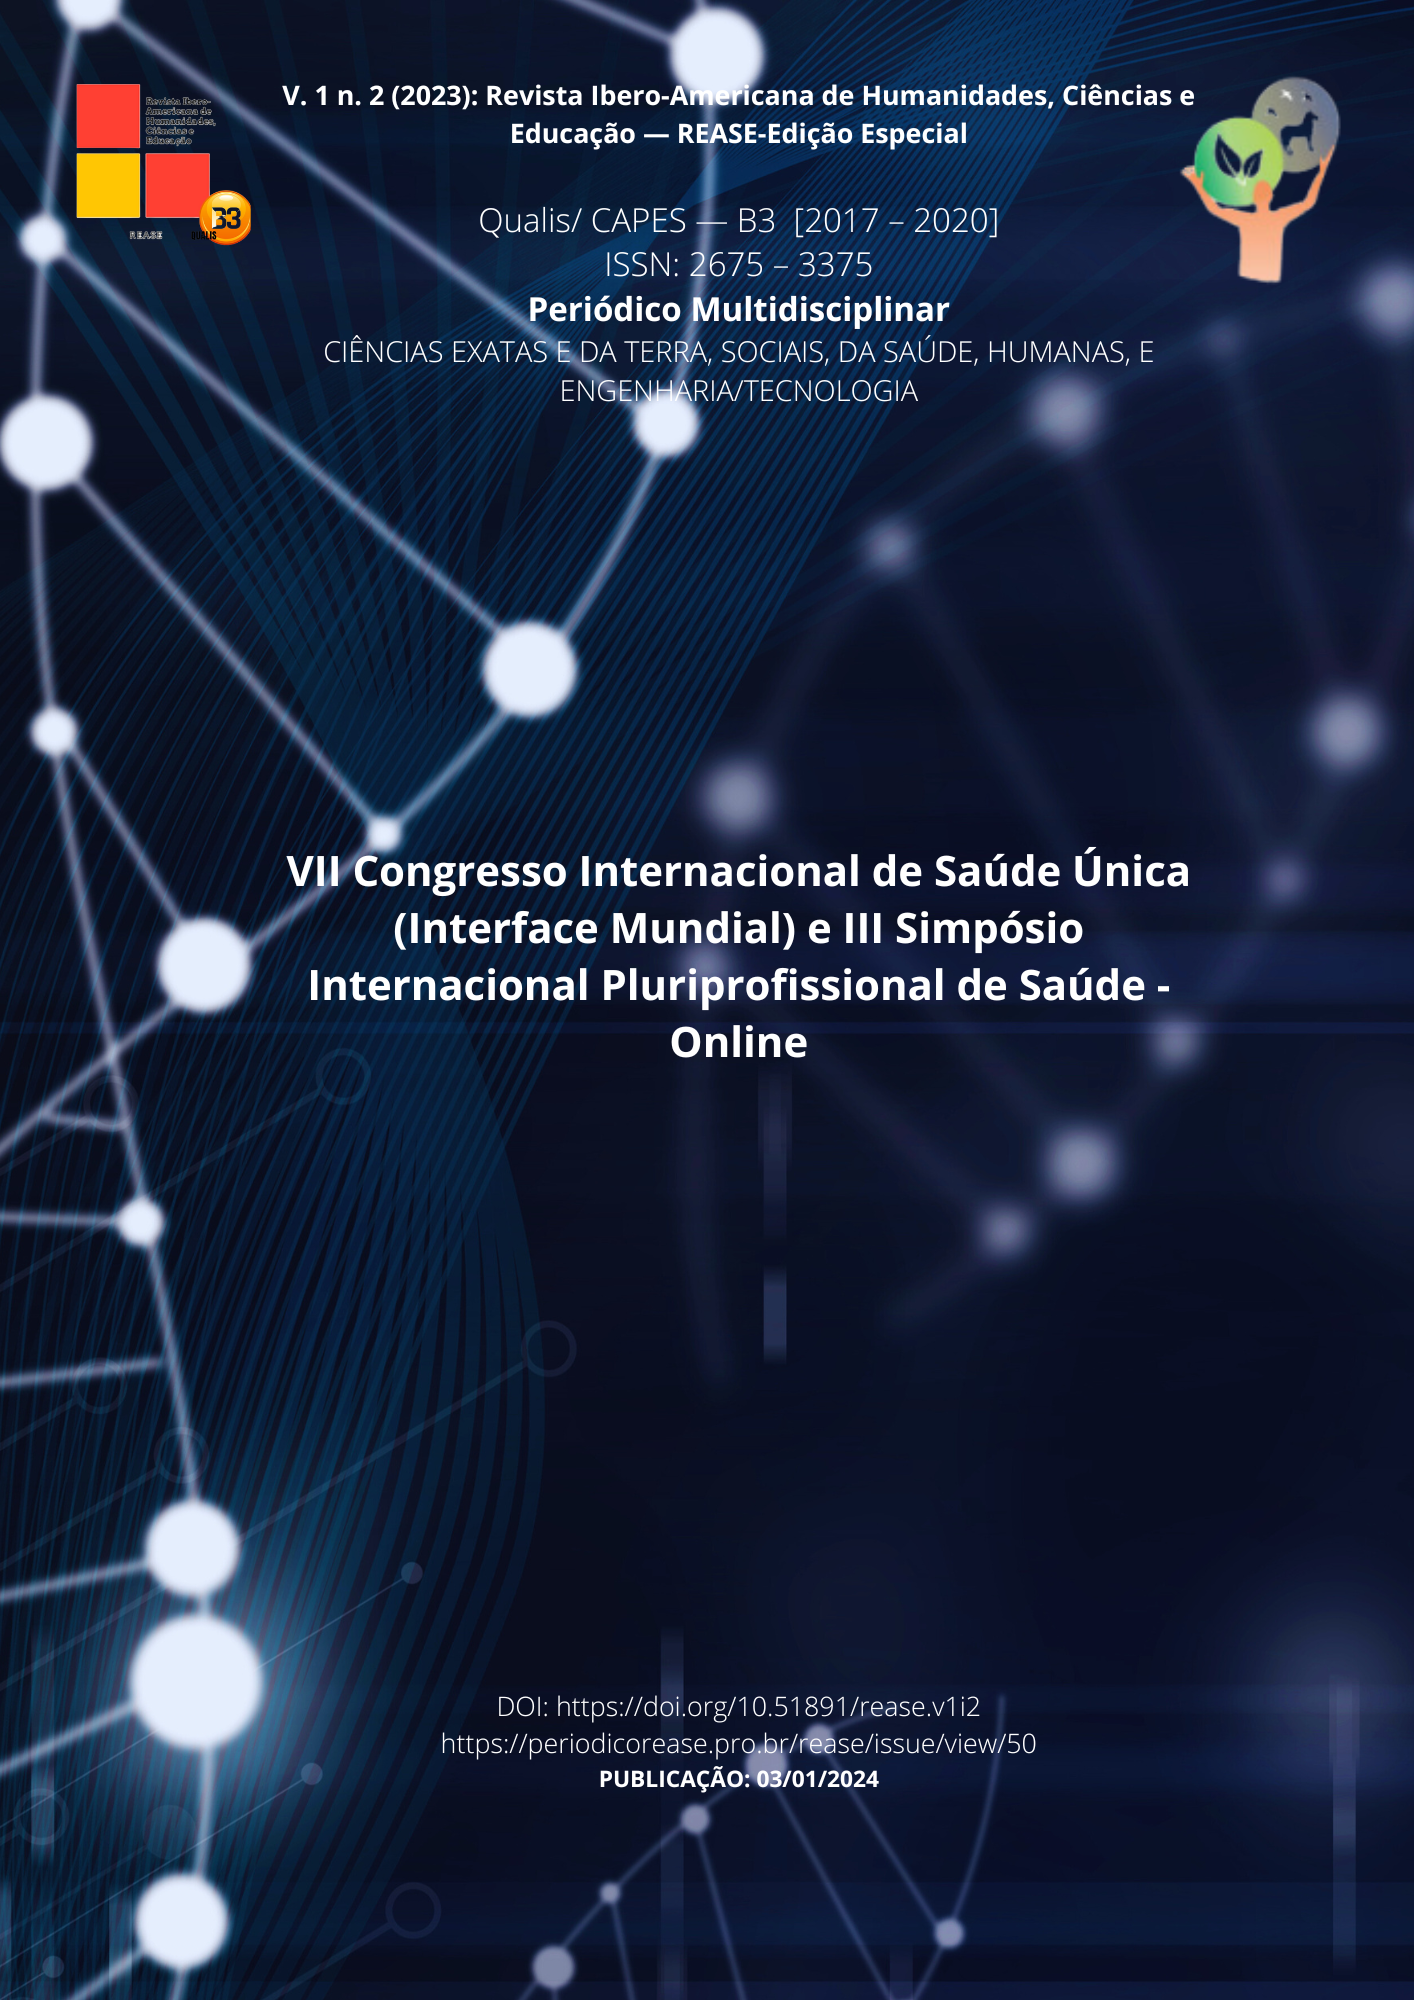 					View Vol. 1 No. 2 (2023): Revista Ibero-Americana de Humanidades, Ciências e Educação- REASE - Edição Especial v. 2 (2023)
				